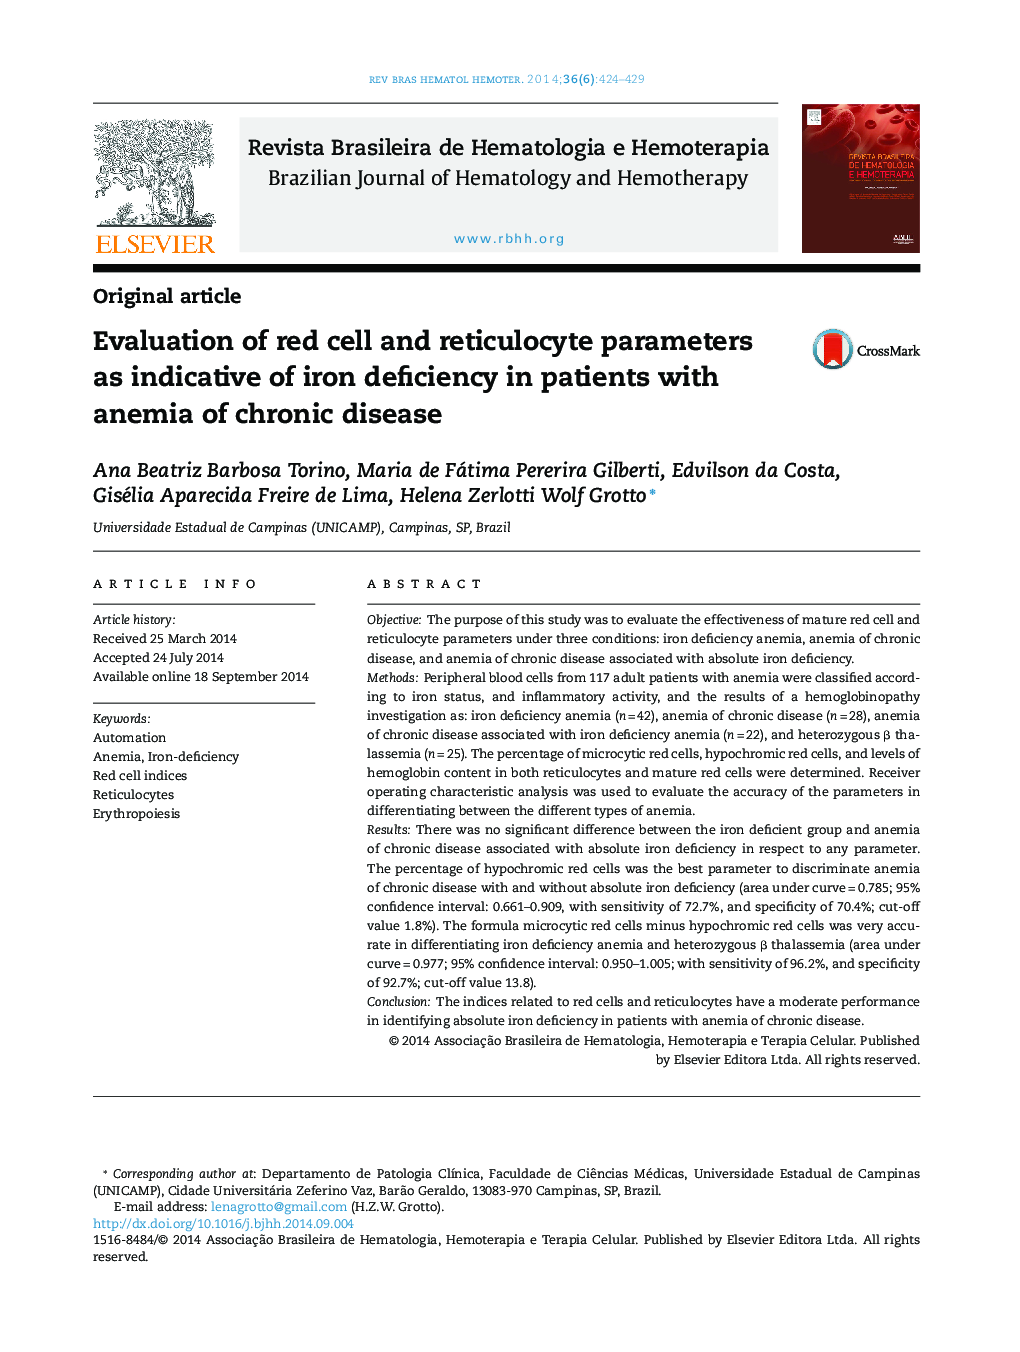 بررسی پارامترهای سلول قرمز و رتینوسیت ها به عنوان نشانگر کمبود آهن در بیماران مبتلا به کم خونی بیماری مزمن 